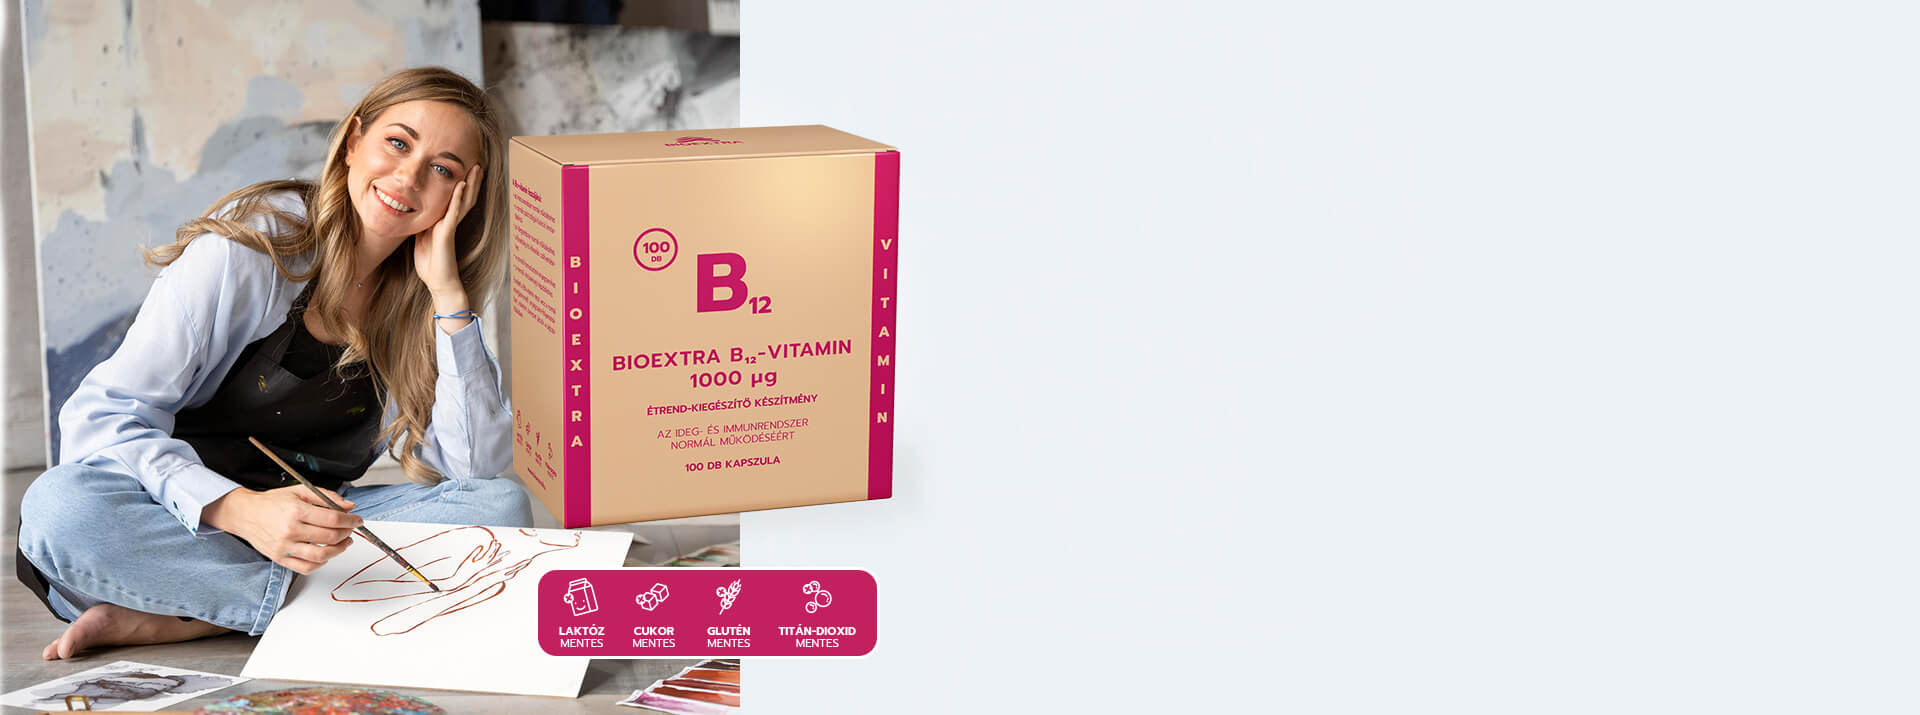 Bioextra B12-vitamin